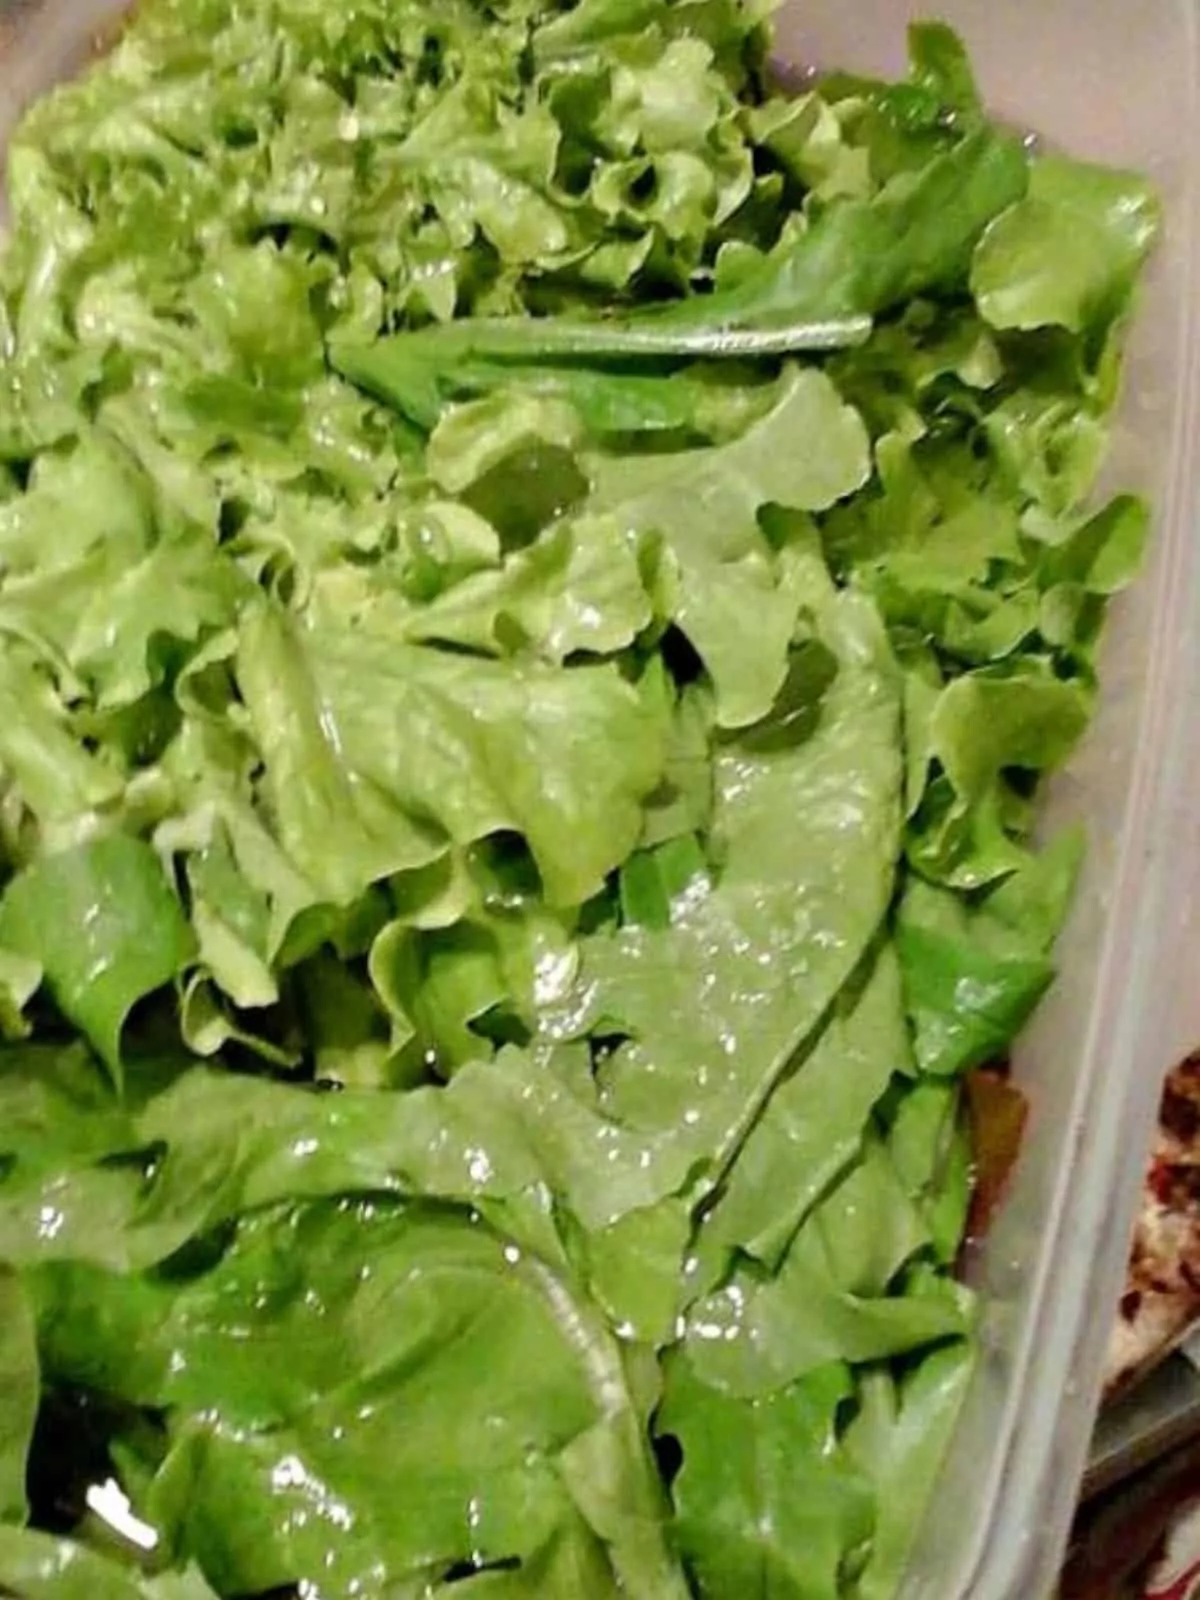 soaking lettuce in water.